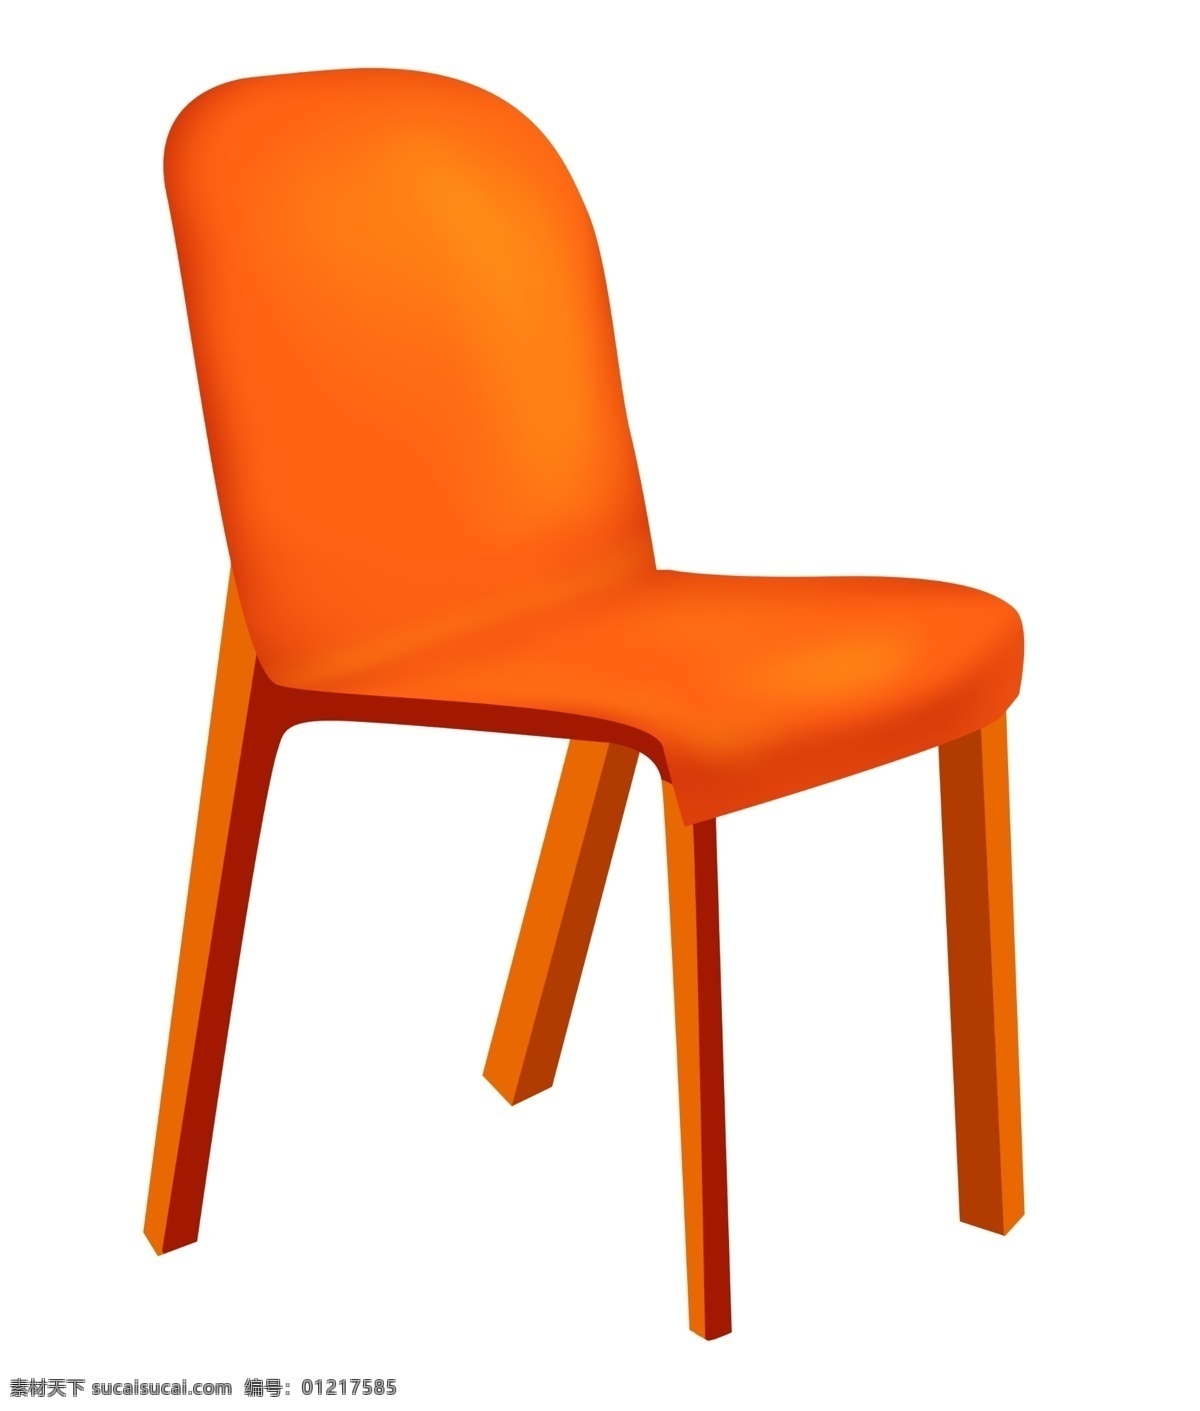 橙色 实木 椅子 插画 橙色的椅子 卡通插画 椅子插画 家具插画 椅子家具 精美椅子 时尚的椅子